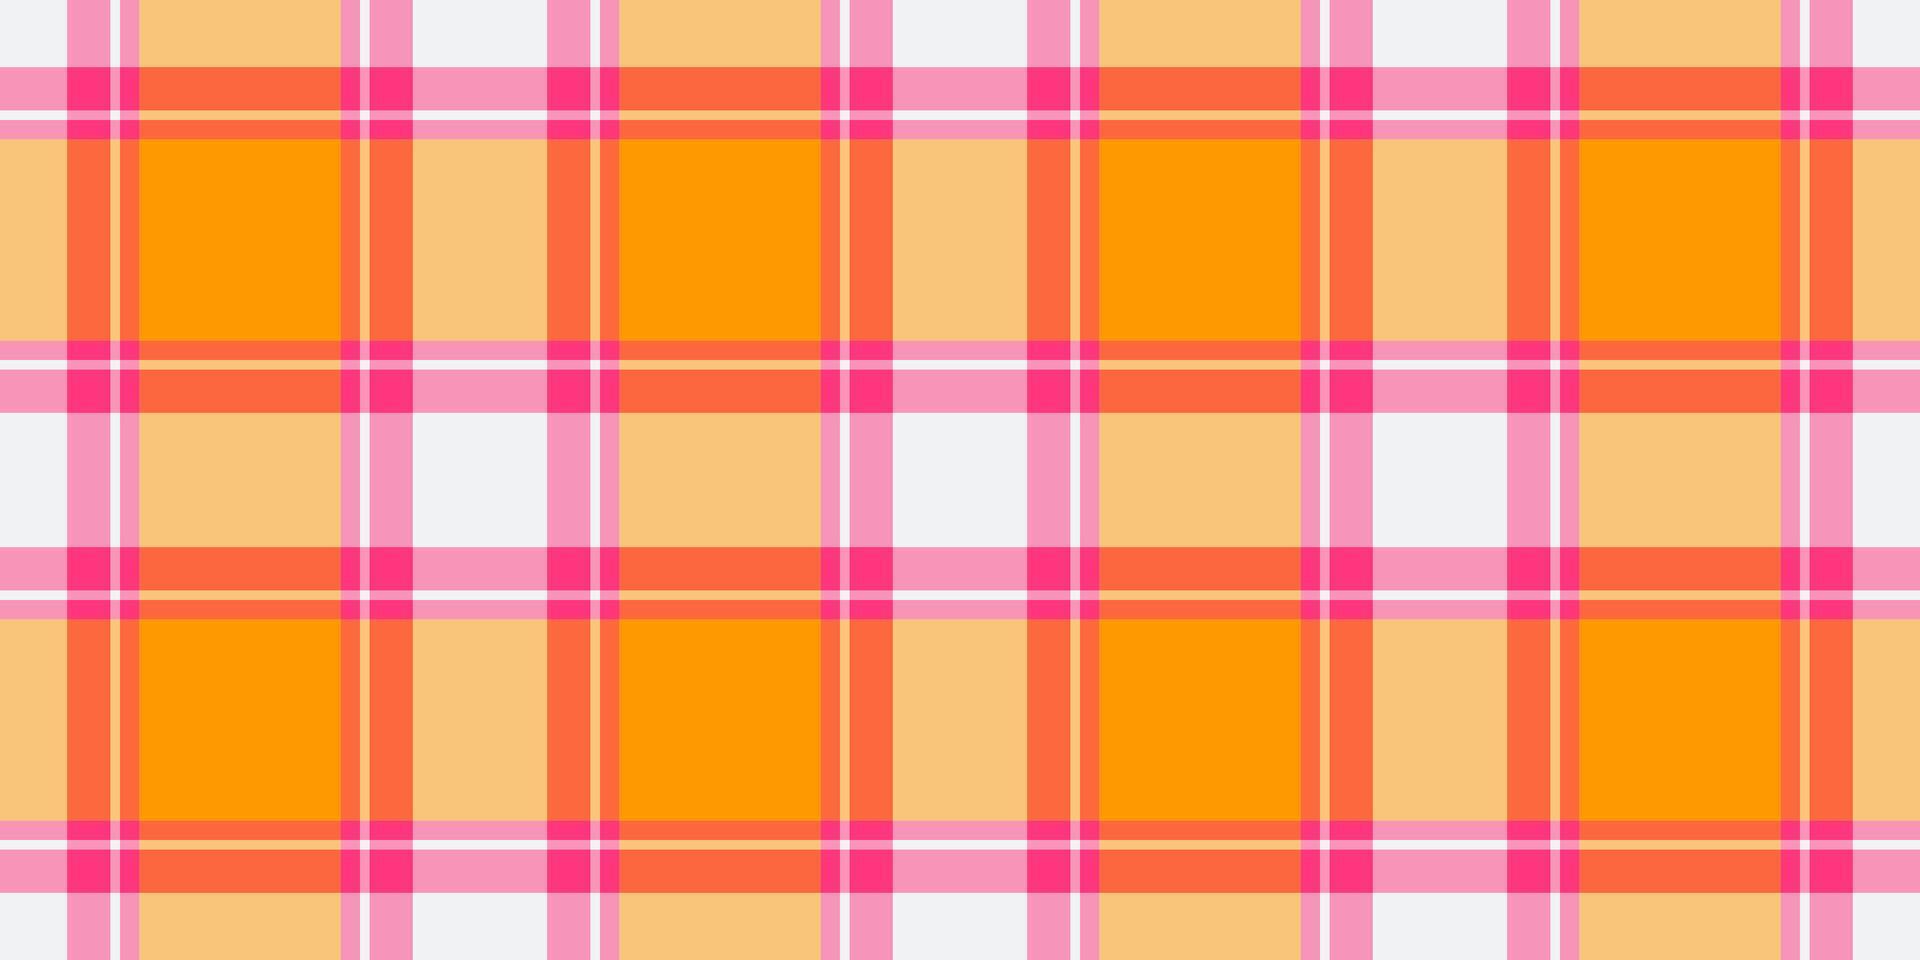 xmas sömlös bakgrund textil, spädbarn tyg kolla upp mönster. kontroll pläd tartan vektor textur i rosa och röd färger.